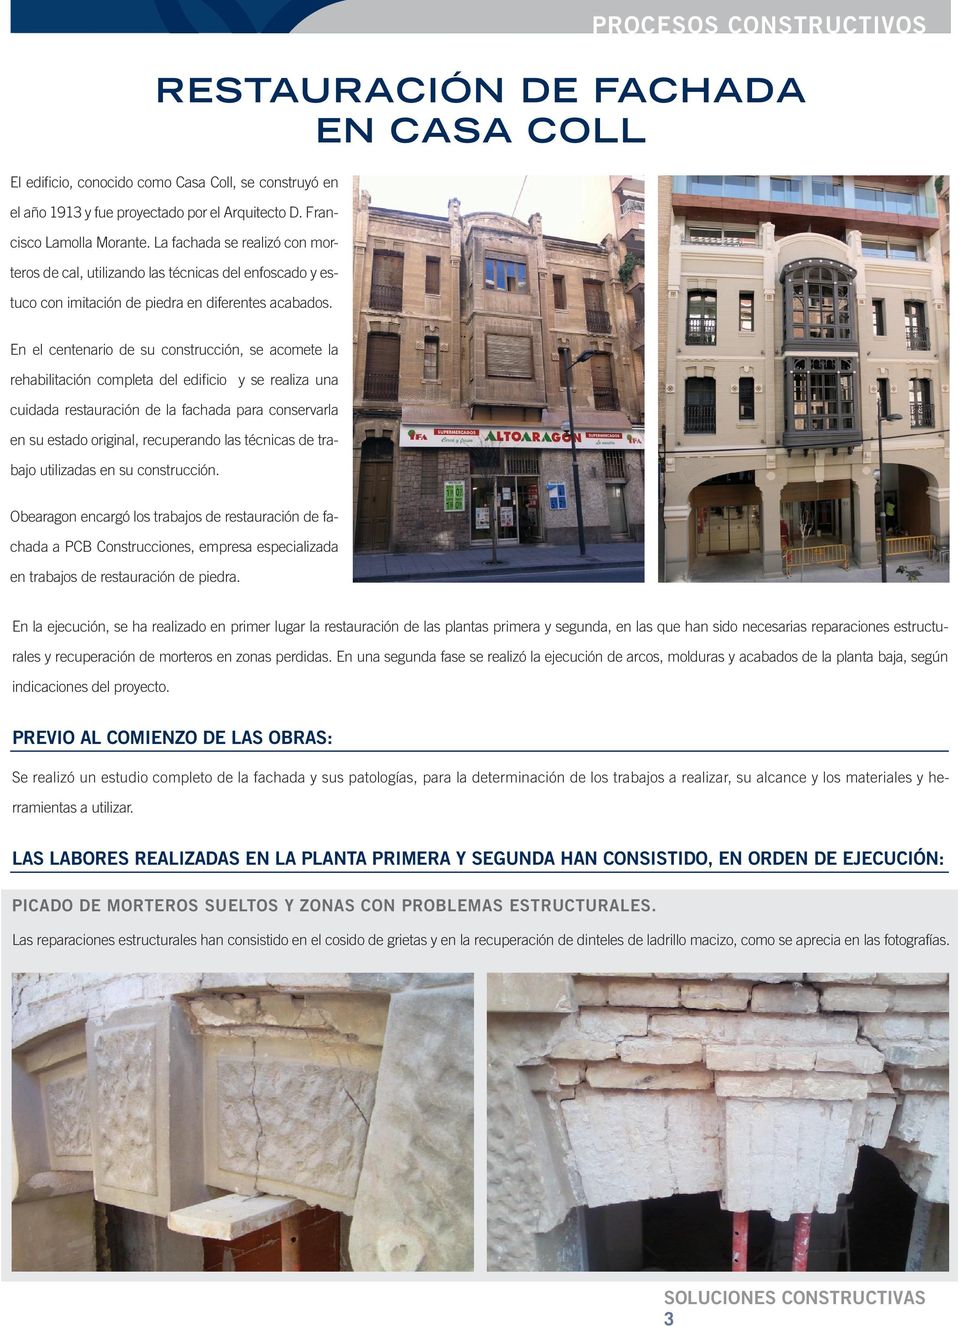 PROCESOS CONSTRUCTIVOS RESTAURACIÓN DE FACHADA EN CASA COLL En el centenario de su construcción, se acomete la rehabilitación completa del edificio y se realiza una cuidada restauración de la fachada